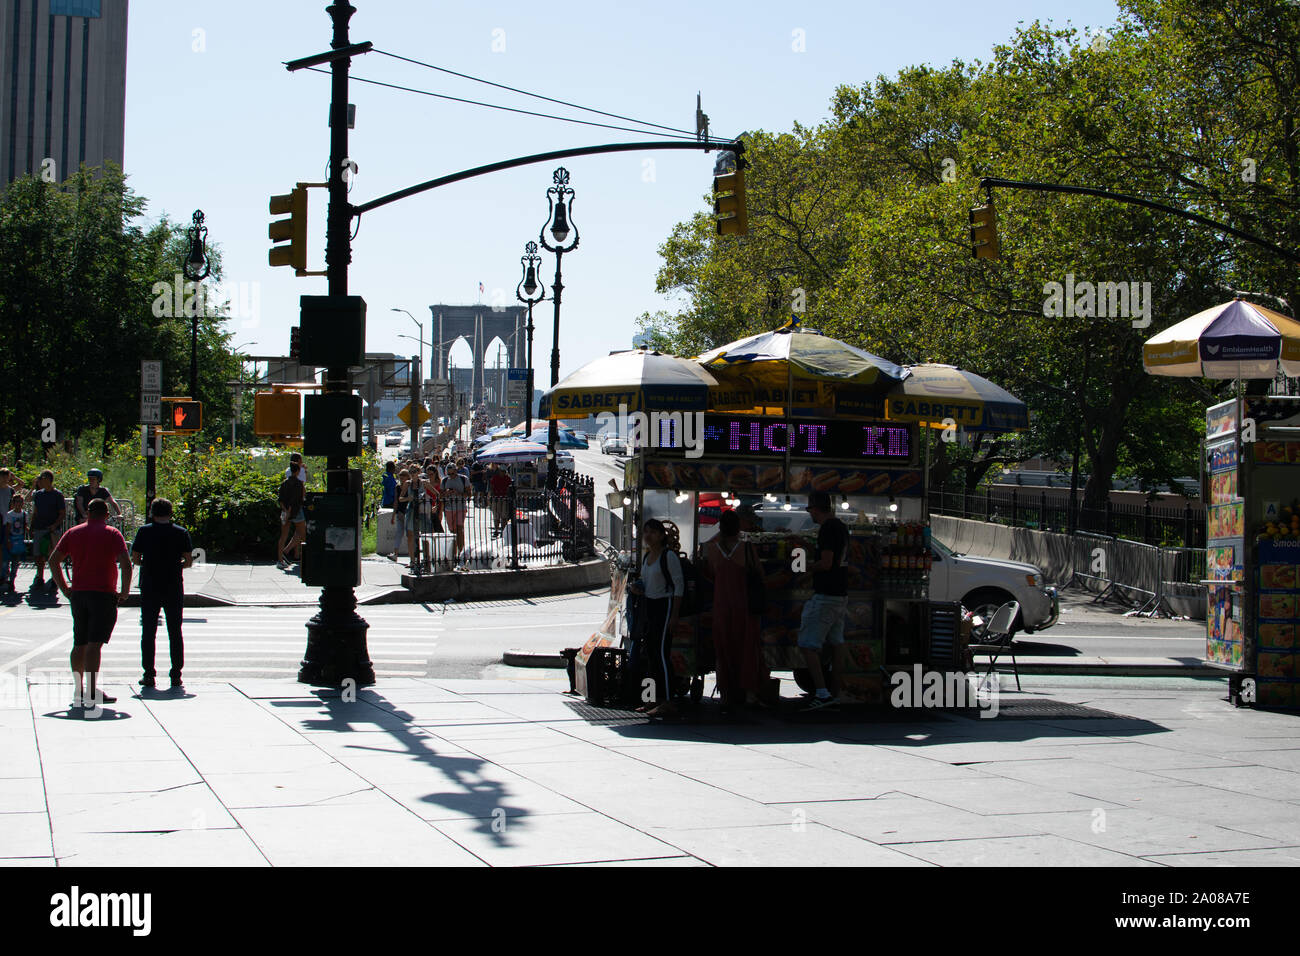 Blick auf die Brooklyn Bridge im Gegenlicht von der Centre Street aus aufgenommen. Menschen sind als Silhouetten zu erkennen. Im Vordergrund auf dem B Stock Photo